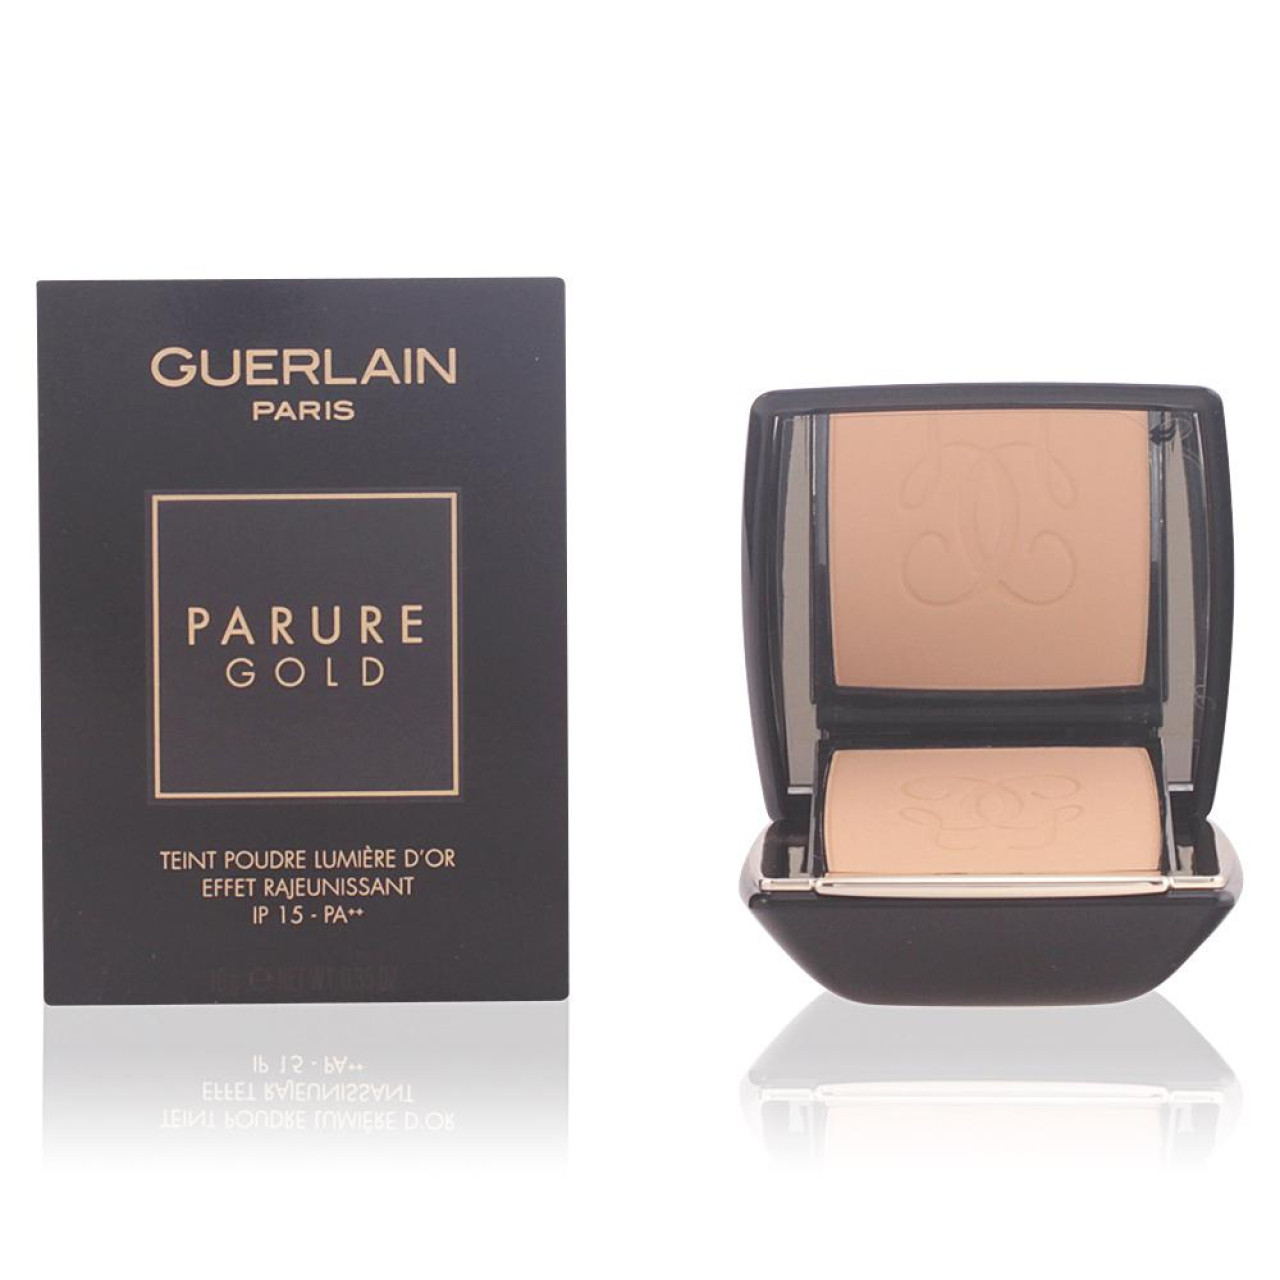 Guerlain Parure gold compact powder 02